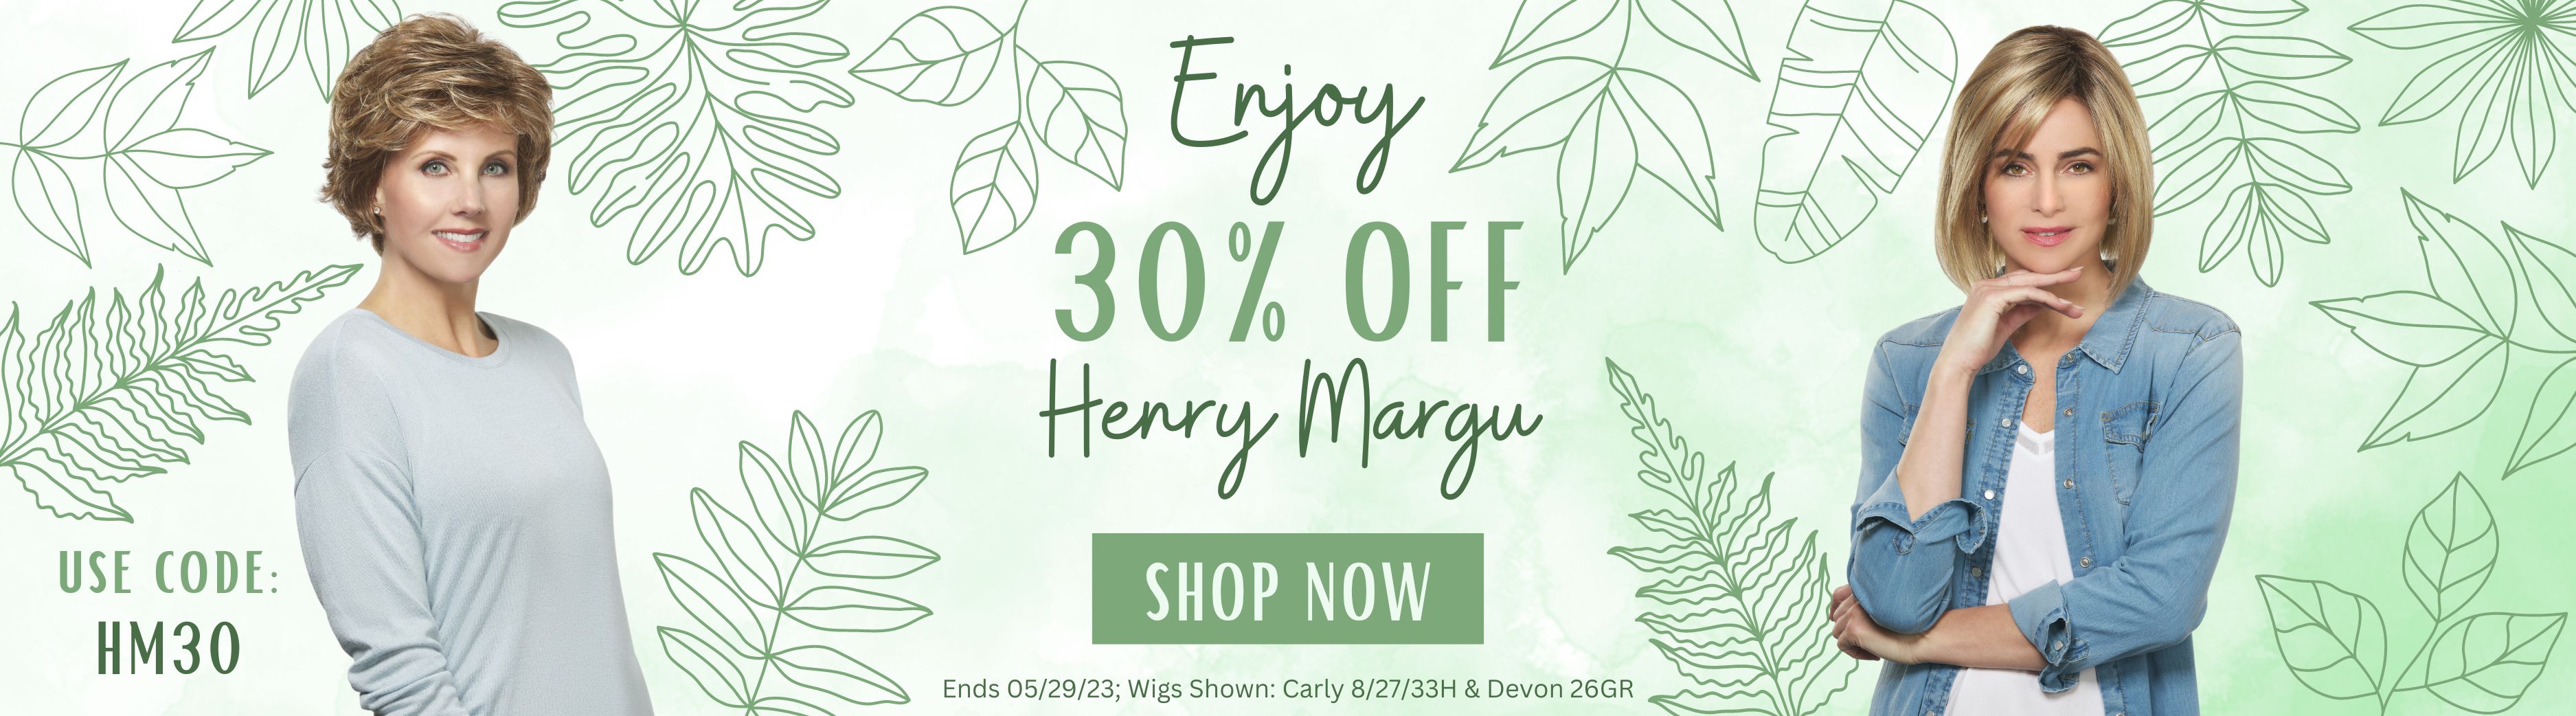 Joshua24.com 30% OFF Henry Margu Sale